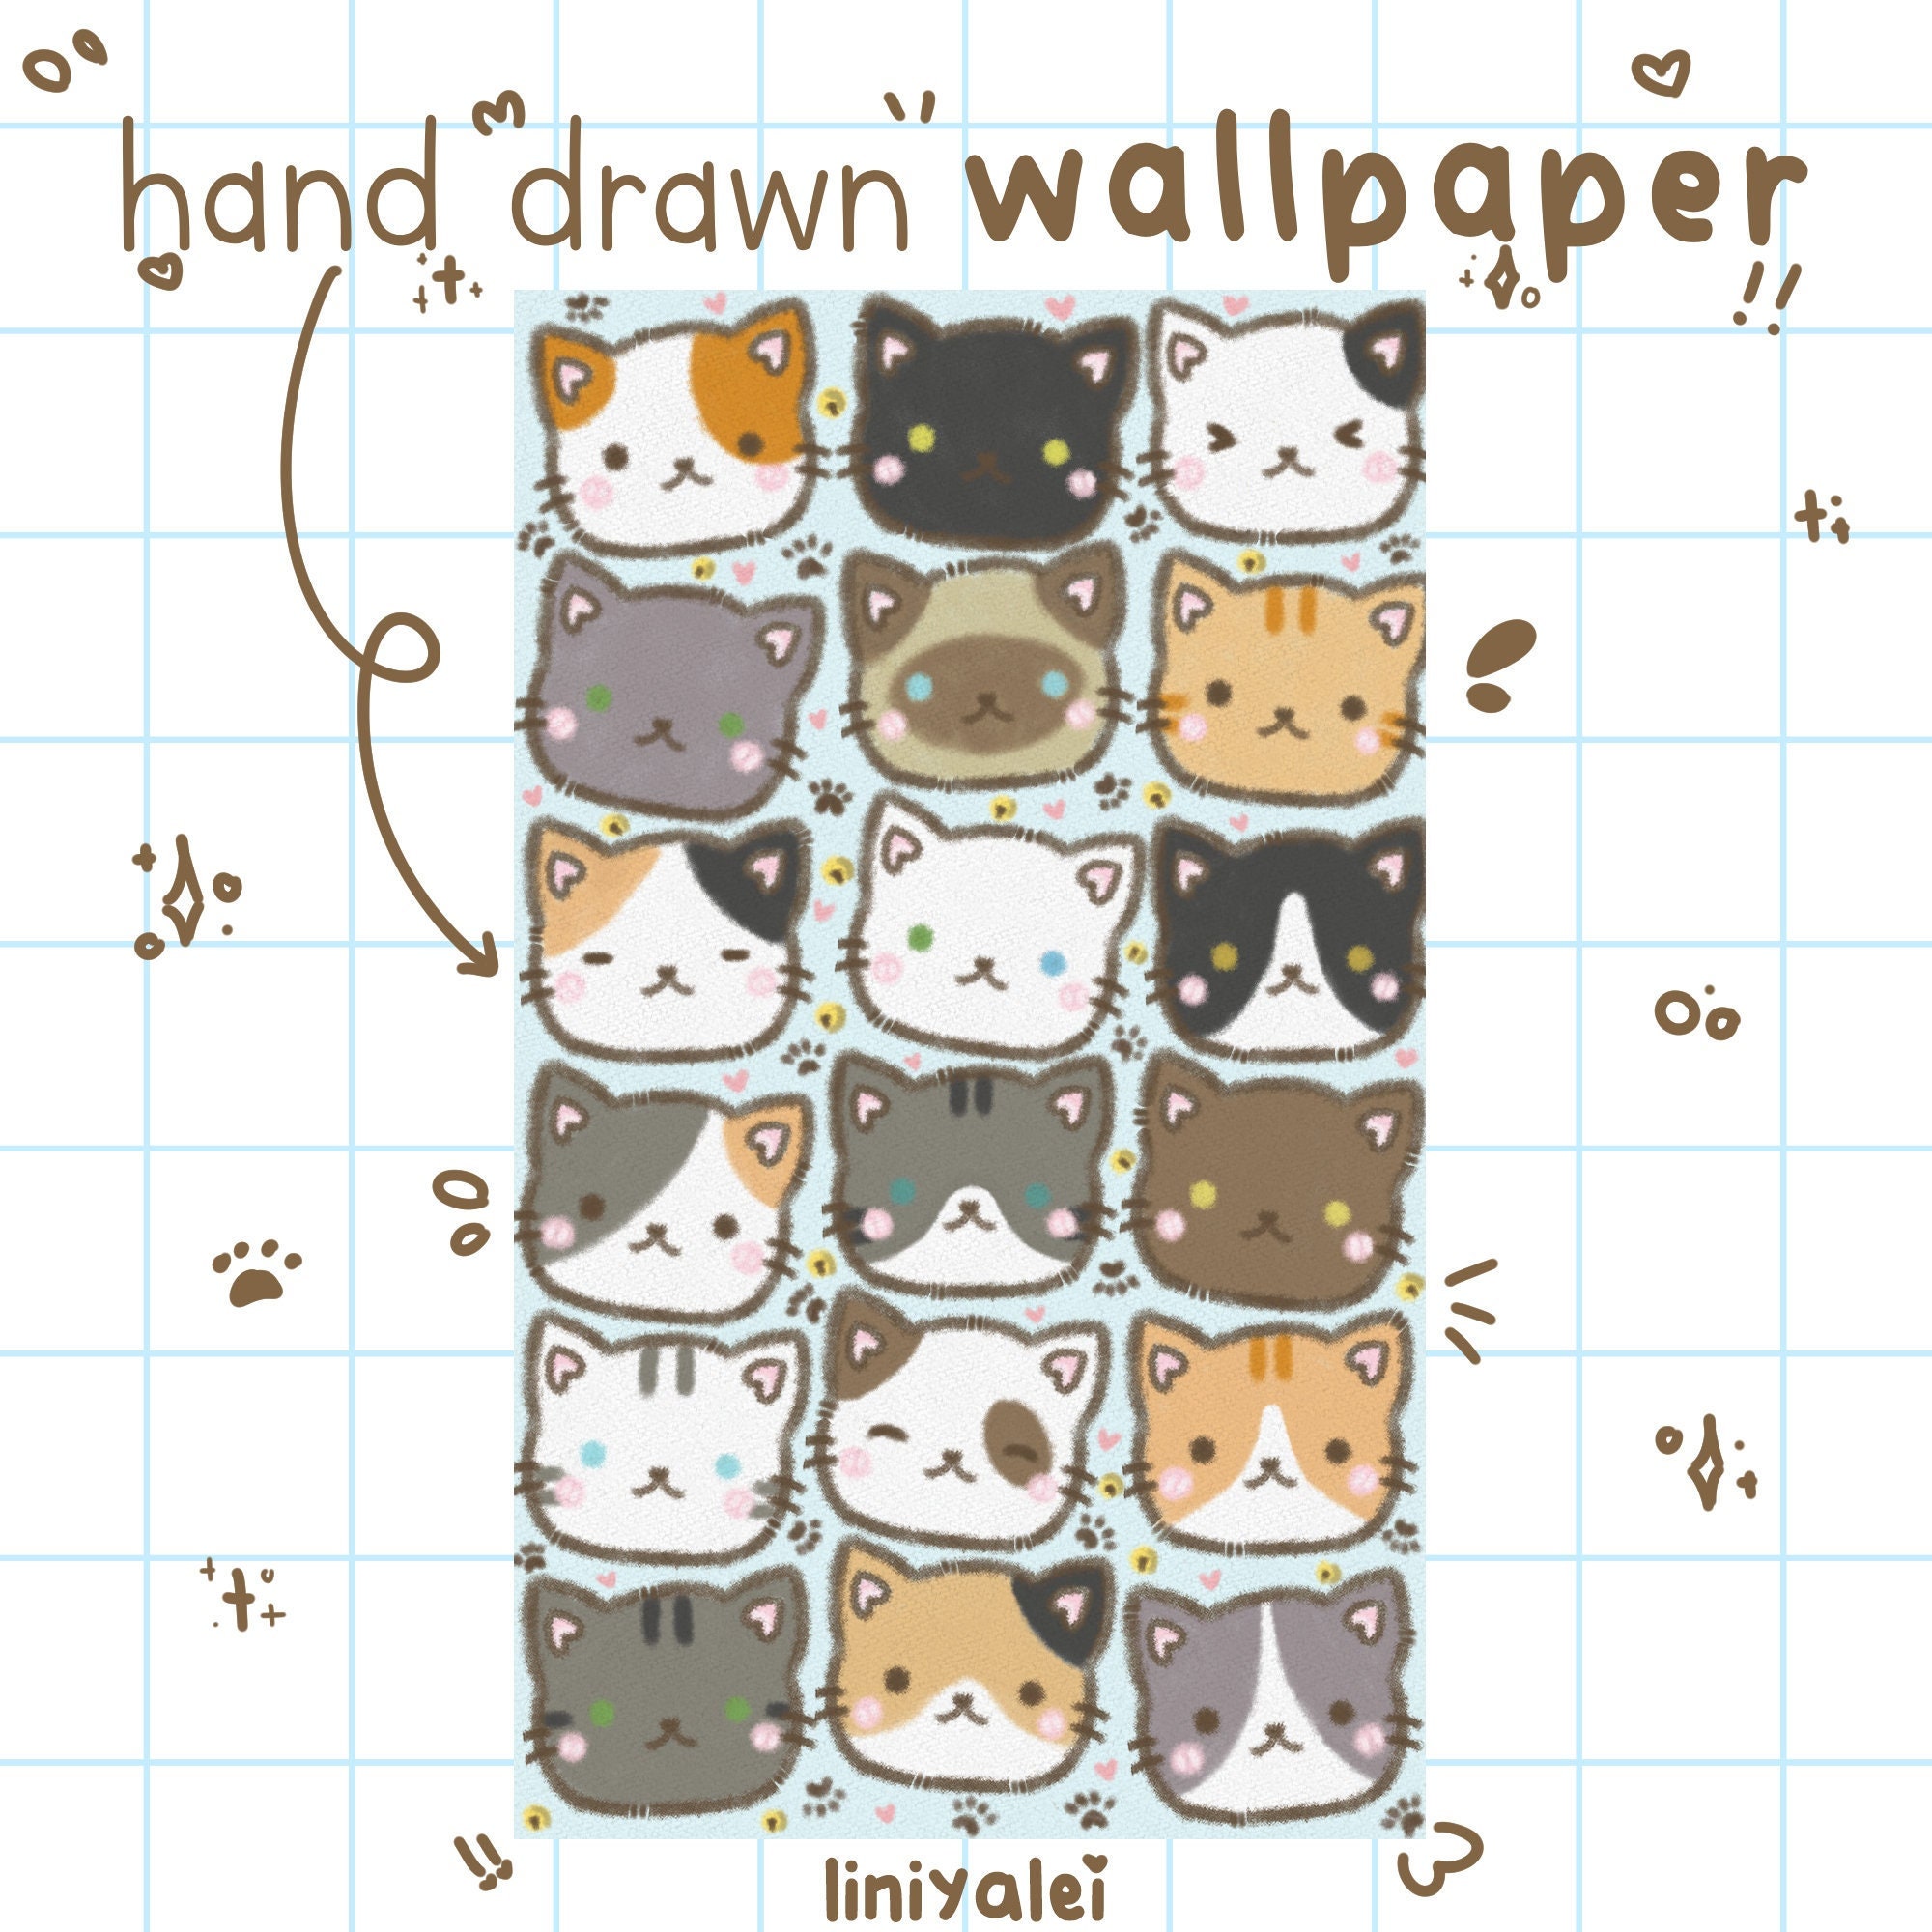 100+] Kawaii Cat Wallpapers